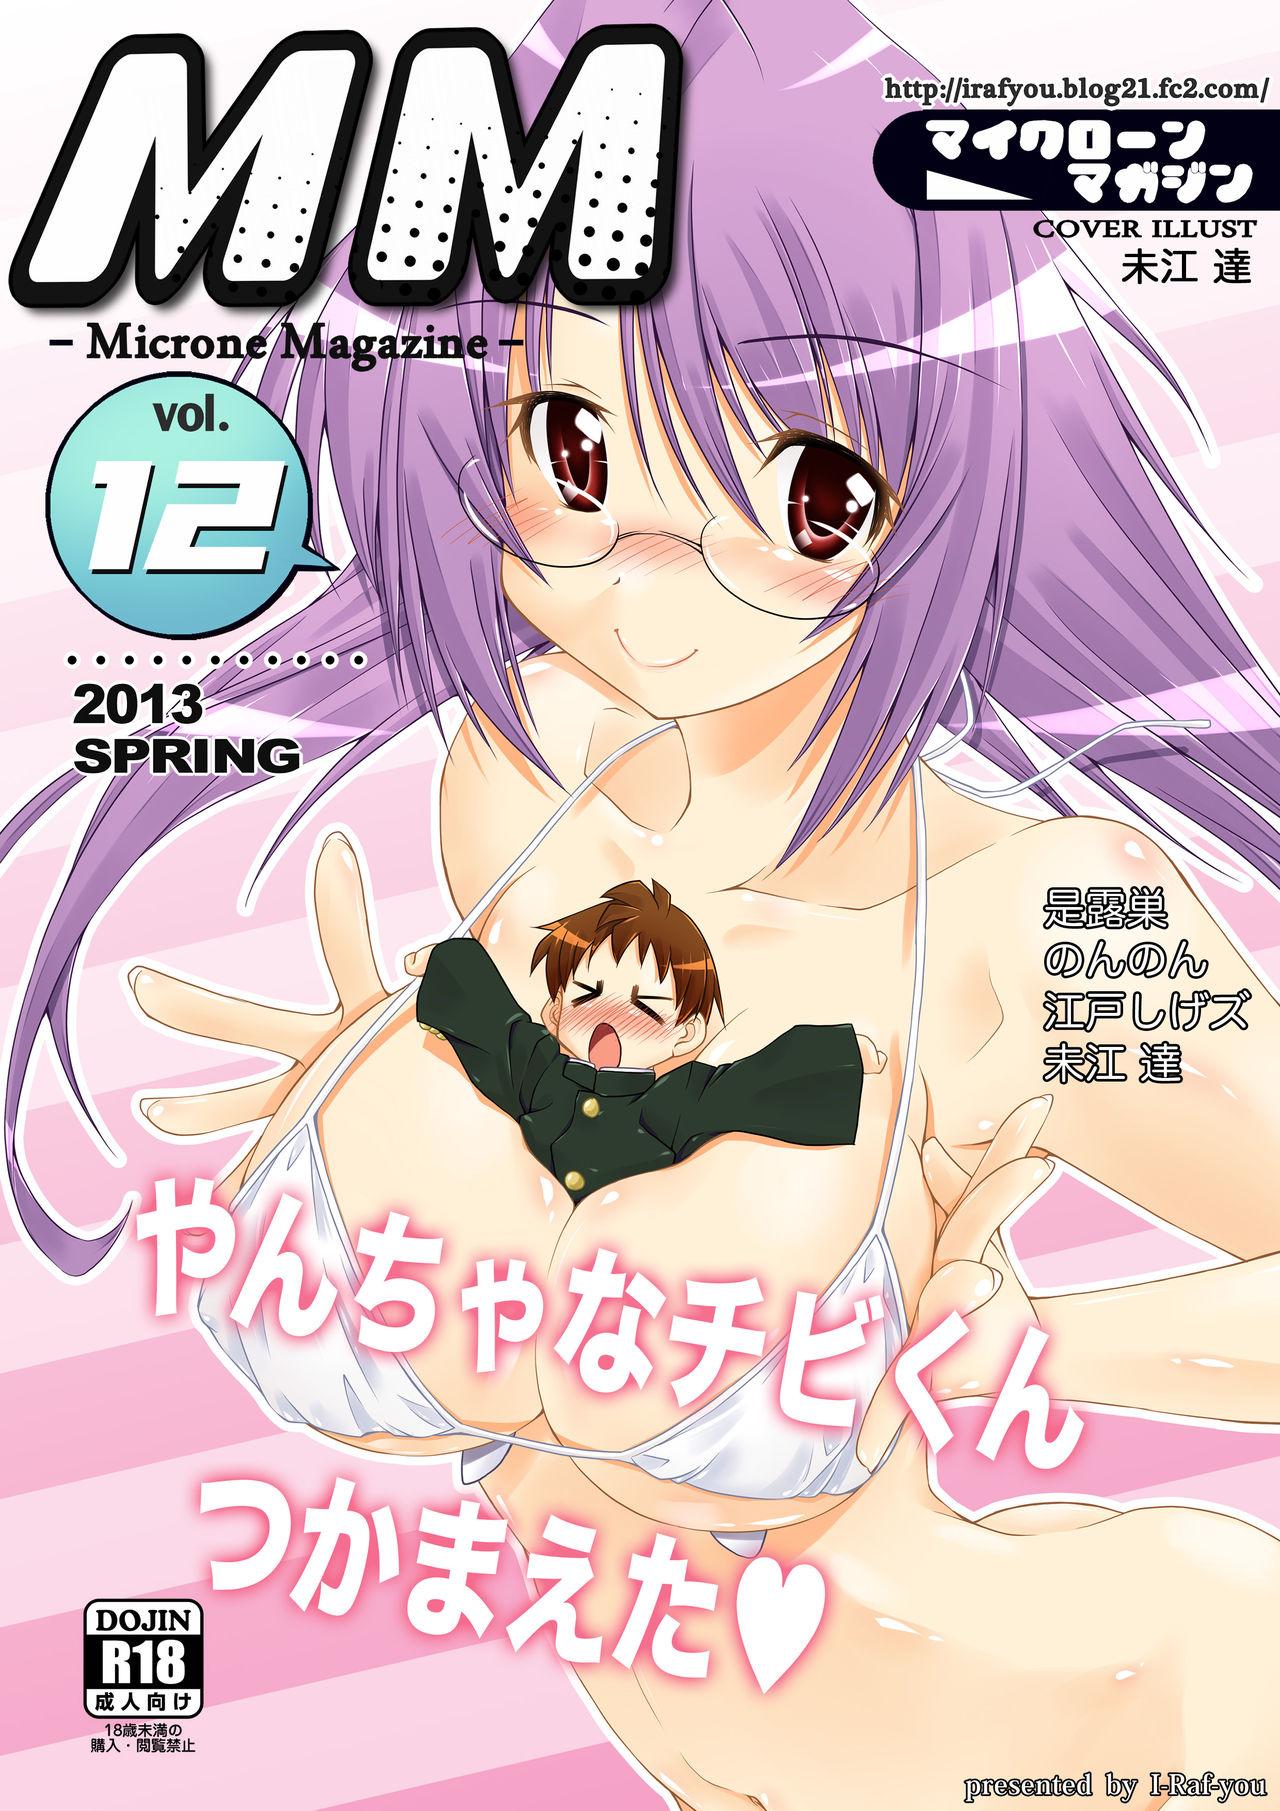 Stepfather Microne Magazine Vol. 12 - Original Anime - Picture 1